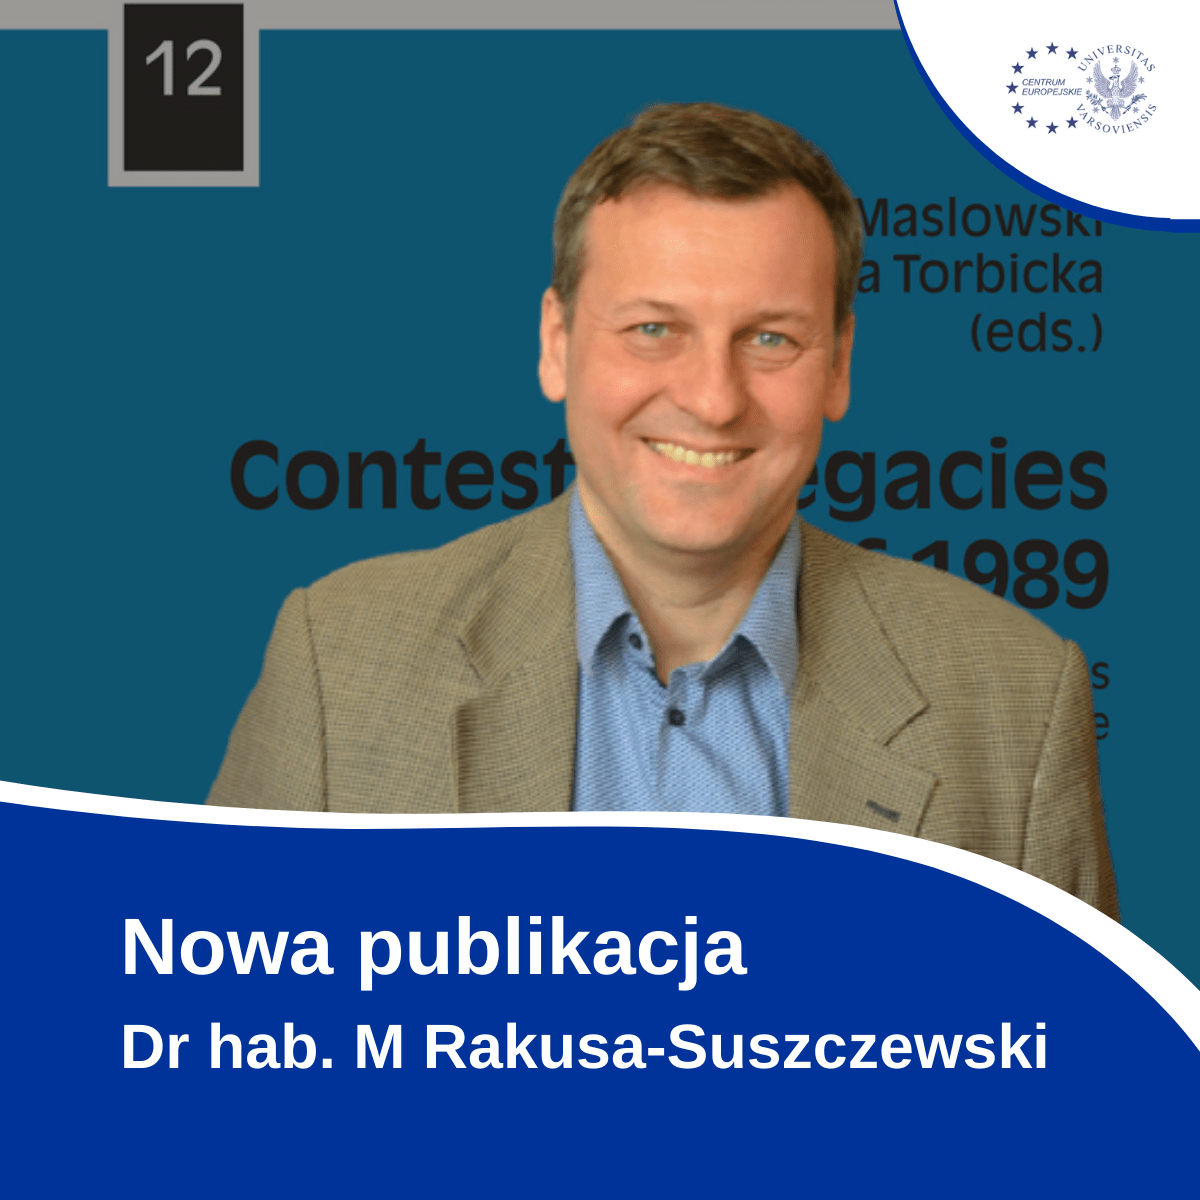 Dr Hab. M. Rakusa Suszczewski   Nowa Publikacja.